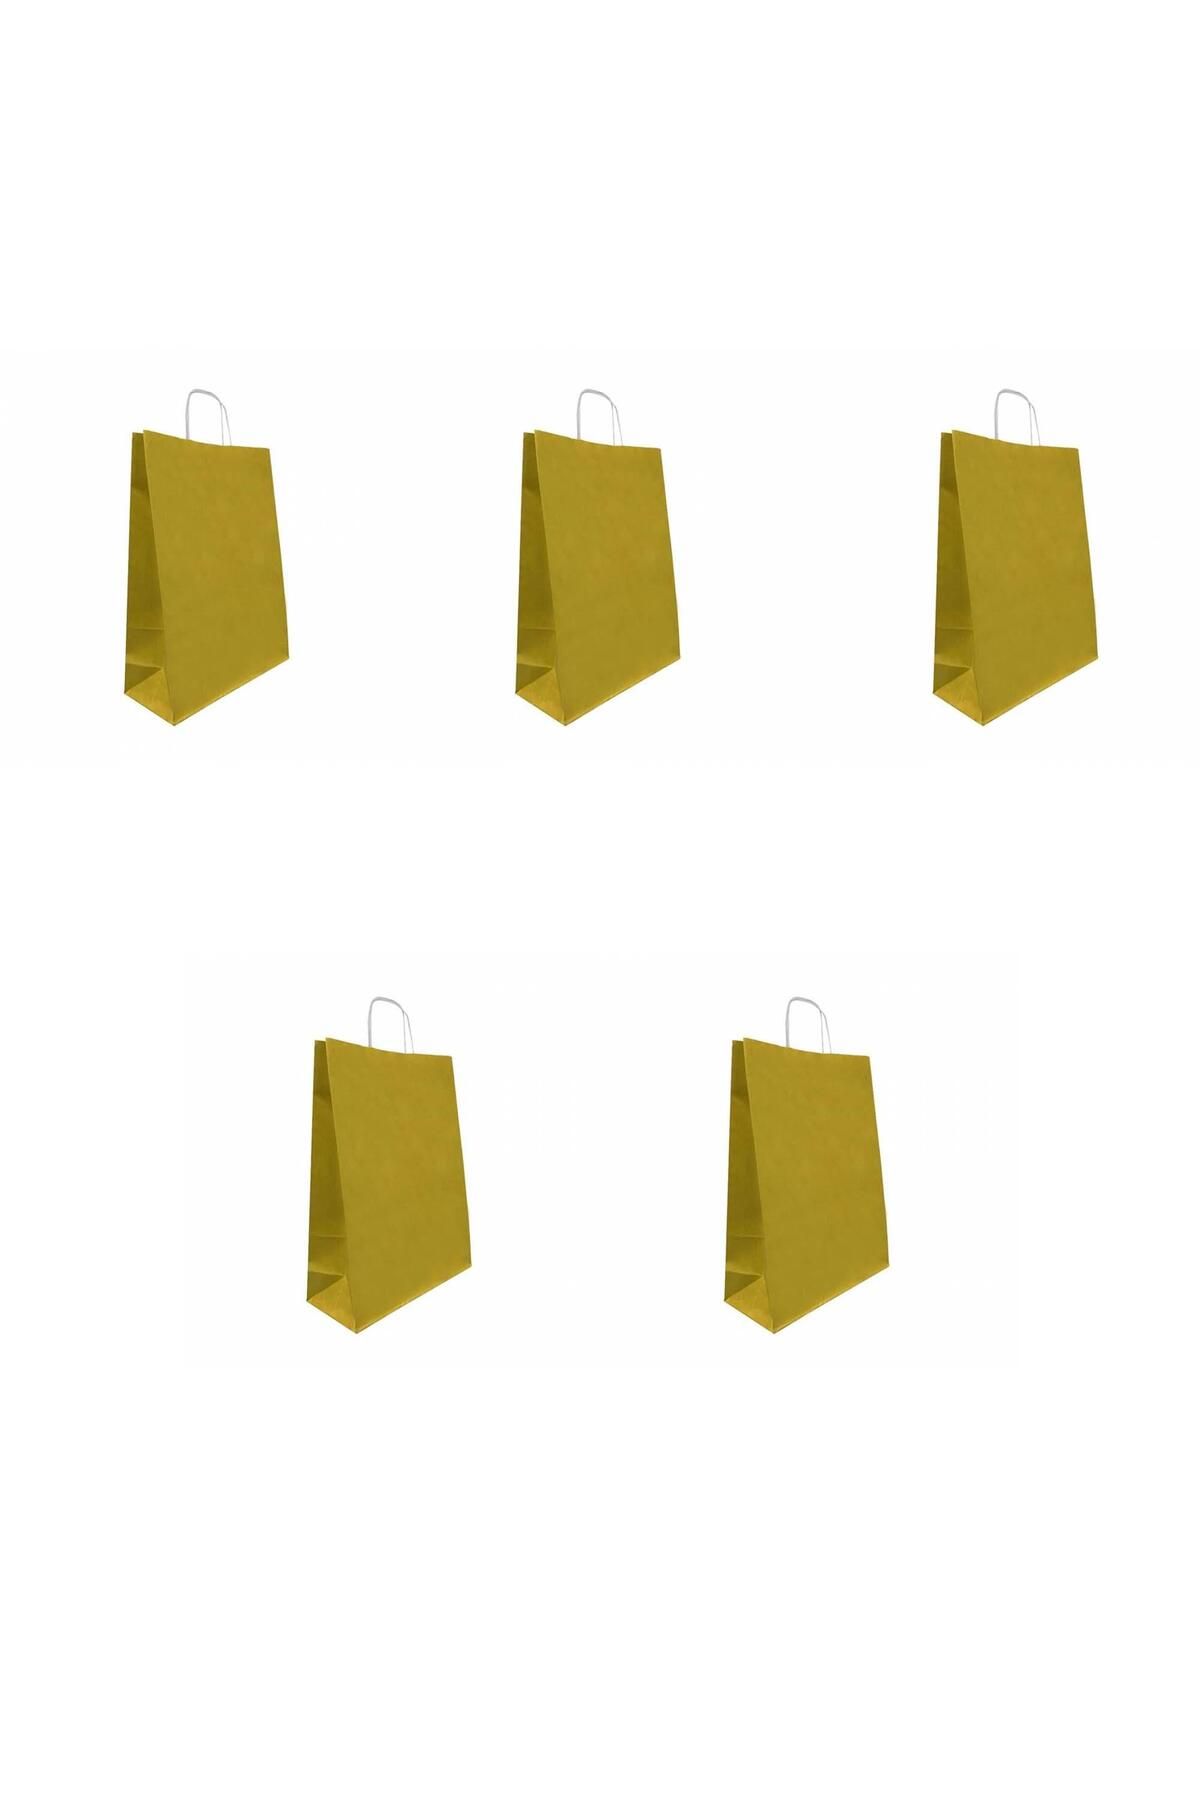 Roll Up Büküm Saplı Kraft Kağıt Çanta Karton Hediyelik Poşet Torba - Altın Sarı-18x24 Cm. - 10 Adetlik Paket